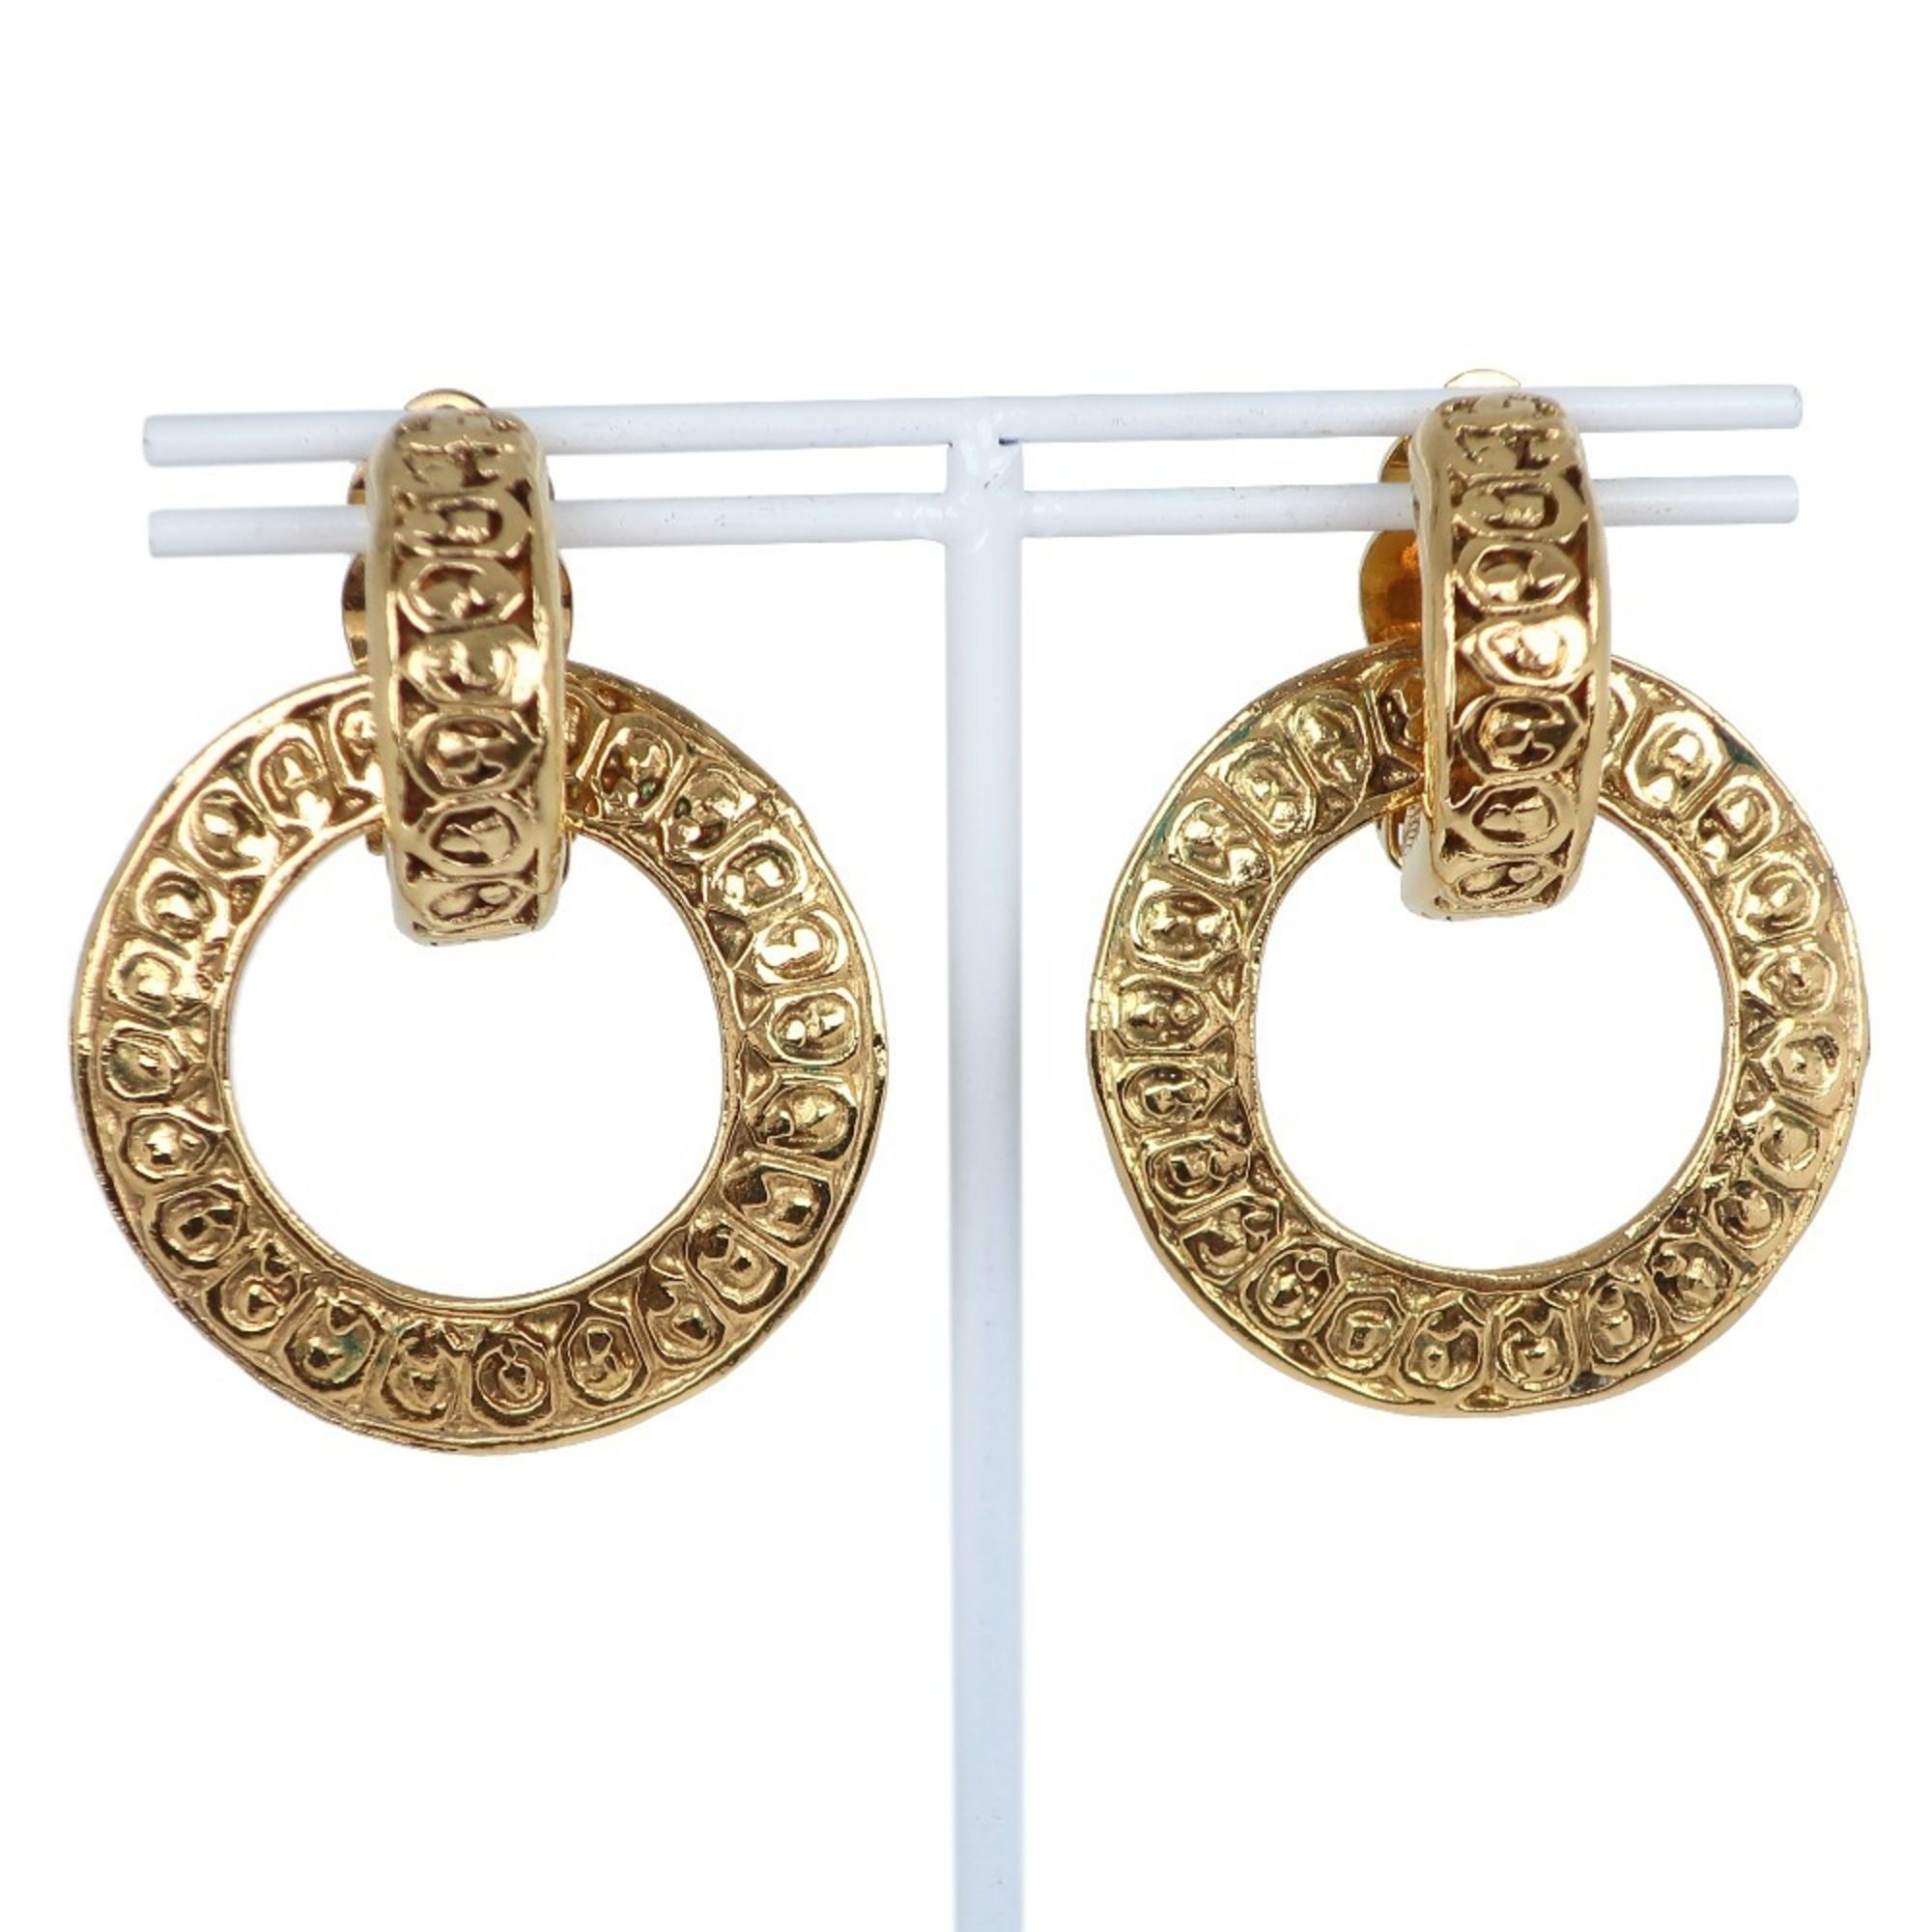 Chanel Chanel earrings loop vintage gold-plated ladies